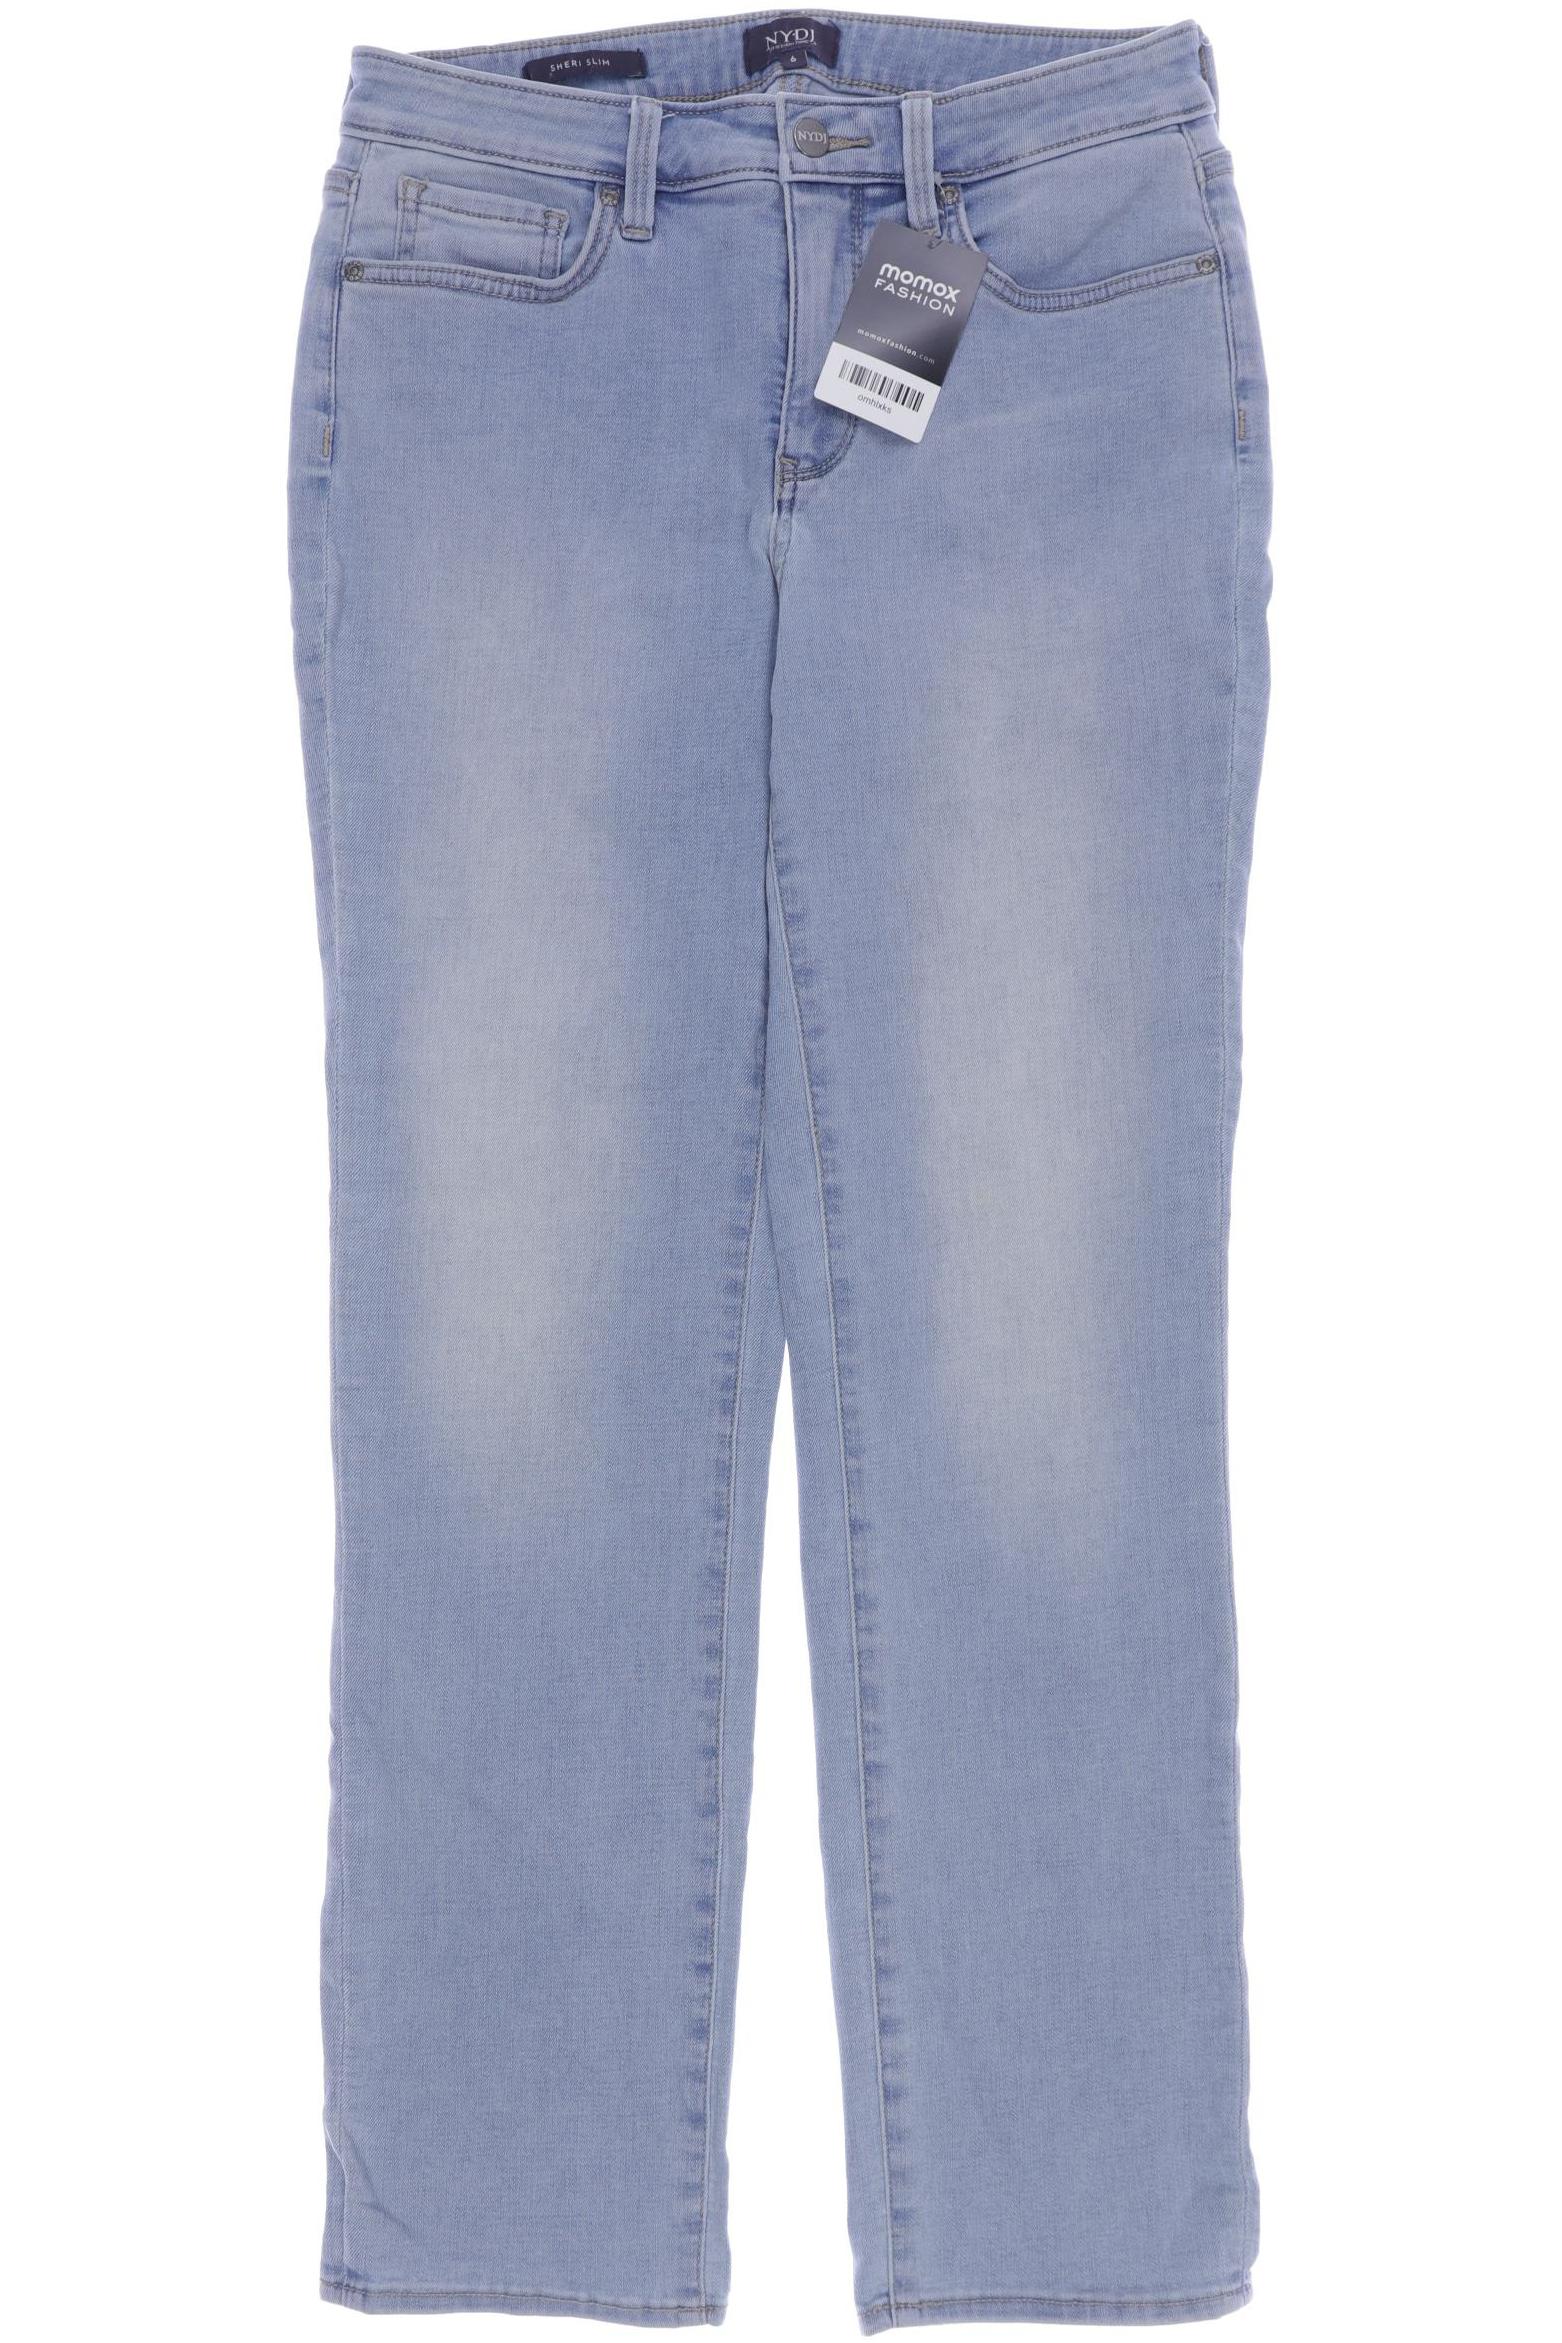 NYDJ Damen Jeans, hellblau von Nydj